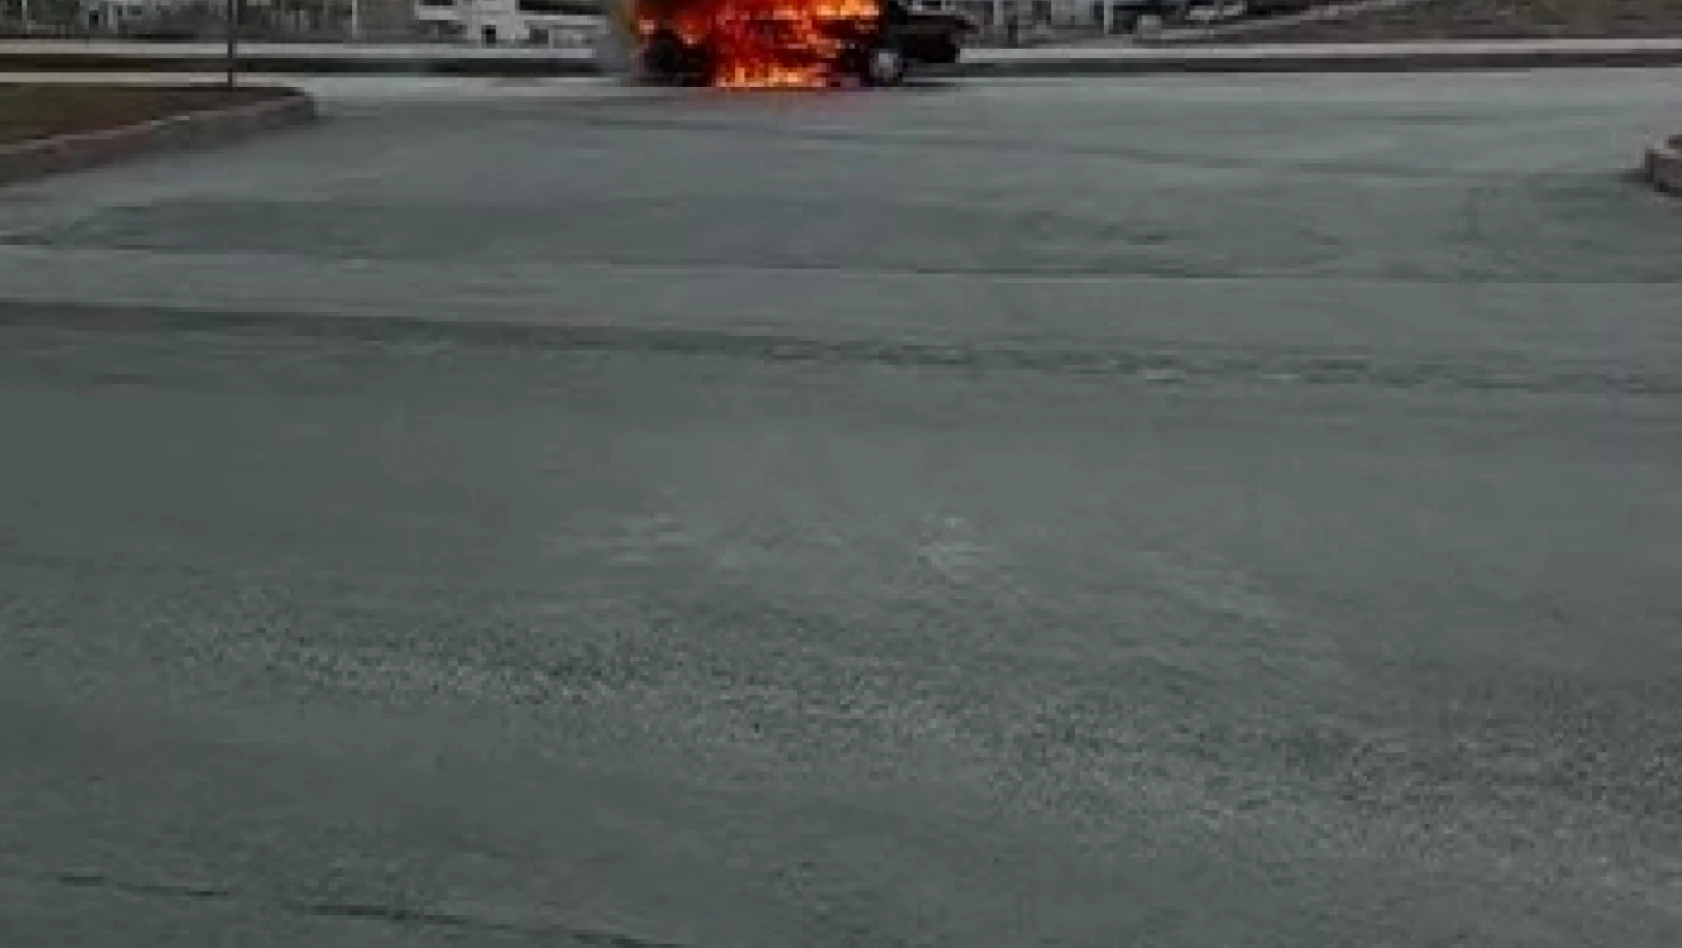 Elazığ'da otomobil alev alev yandı